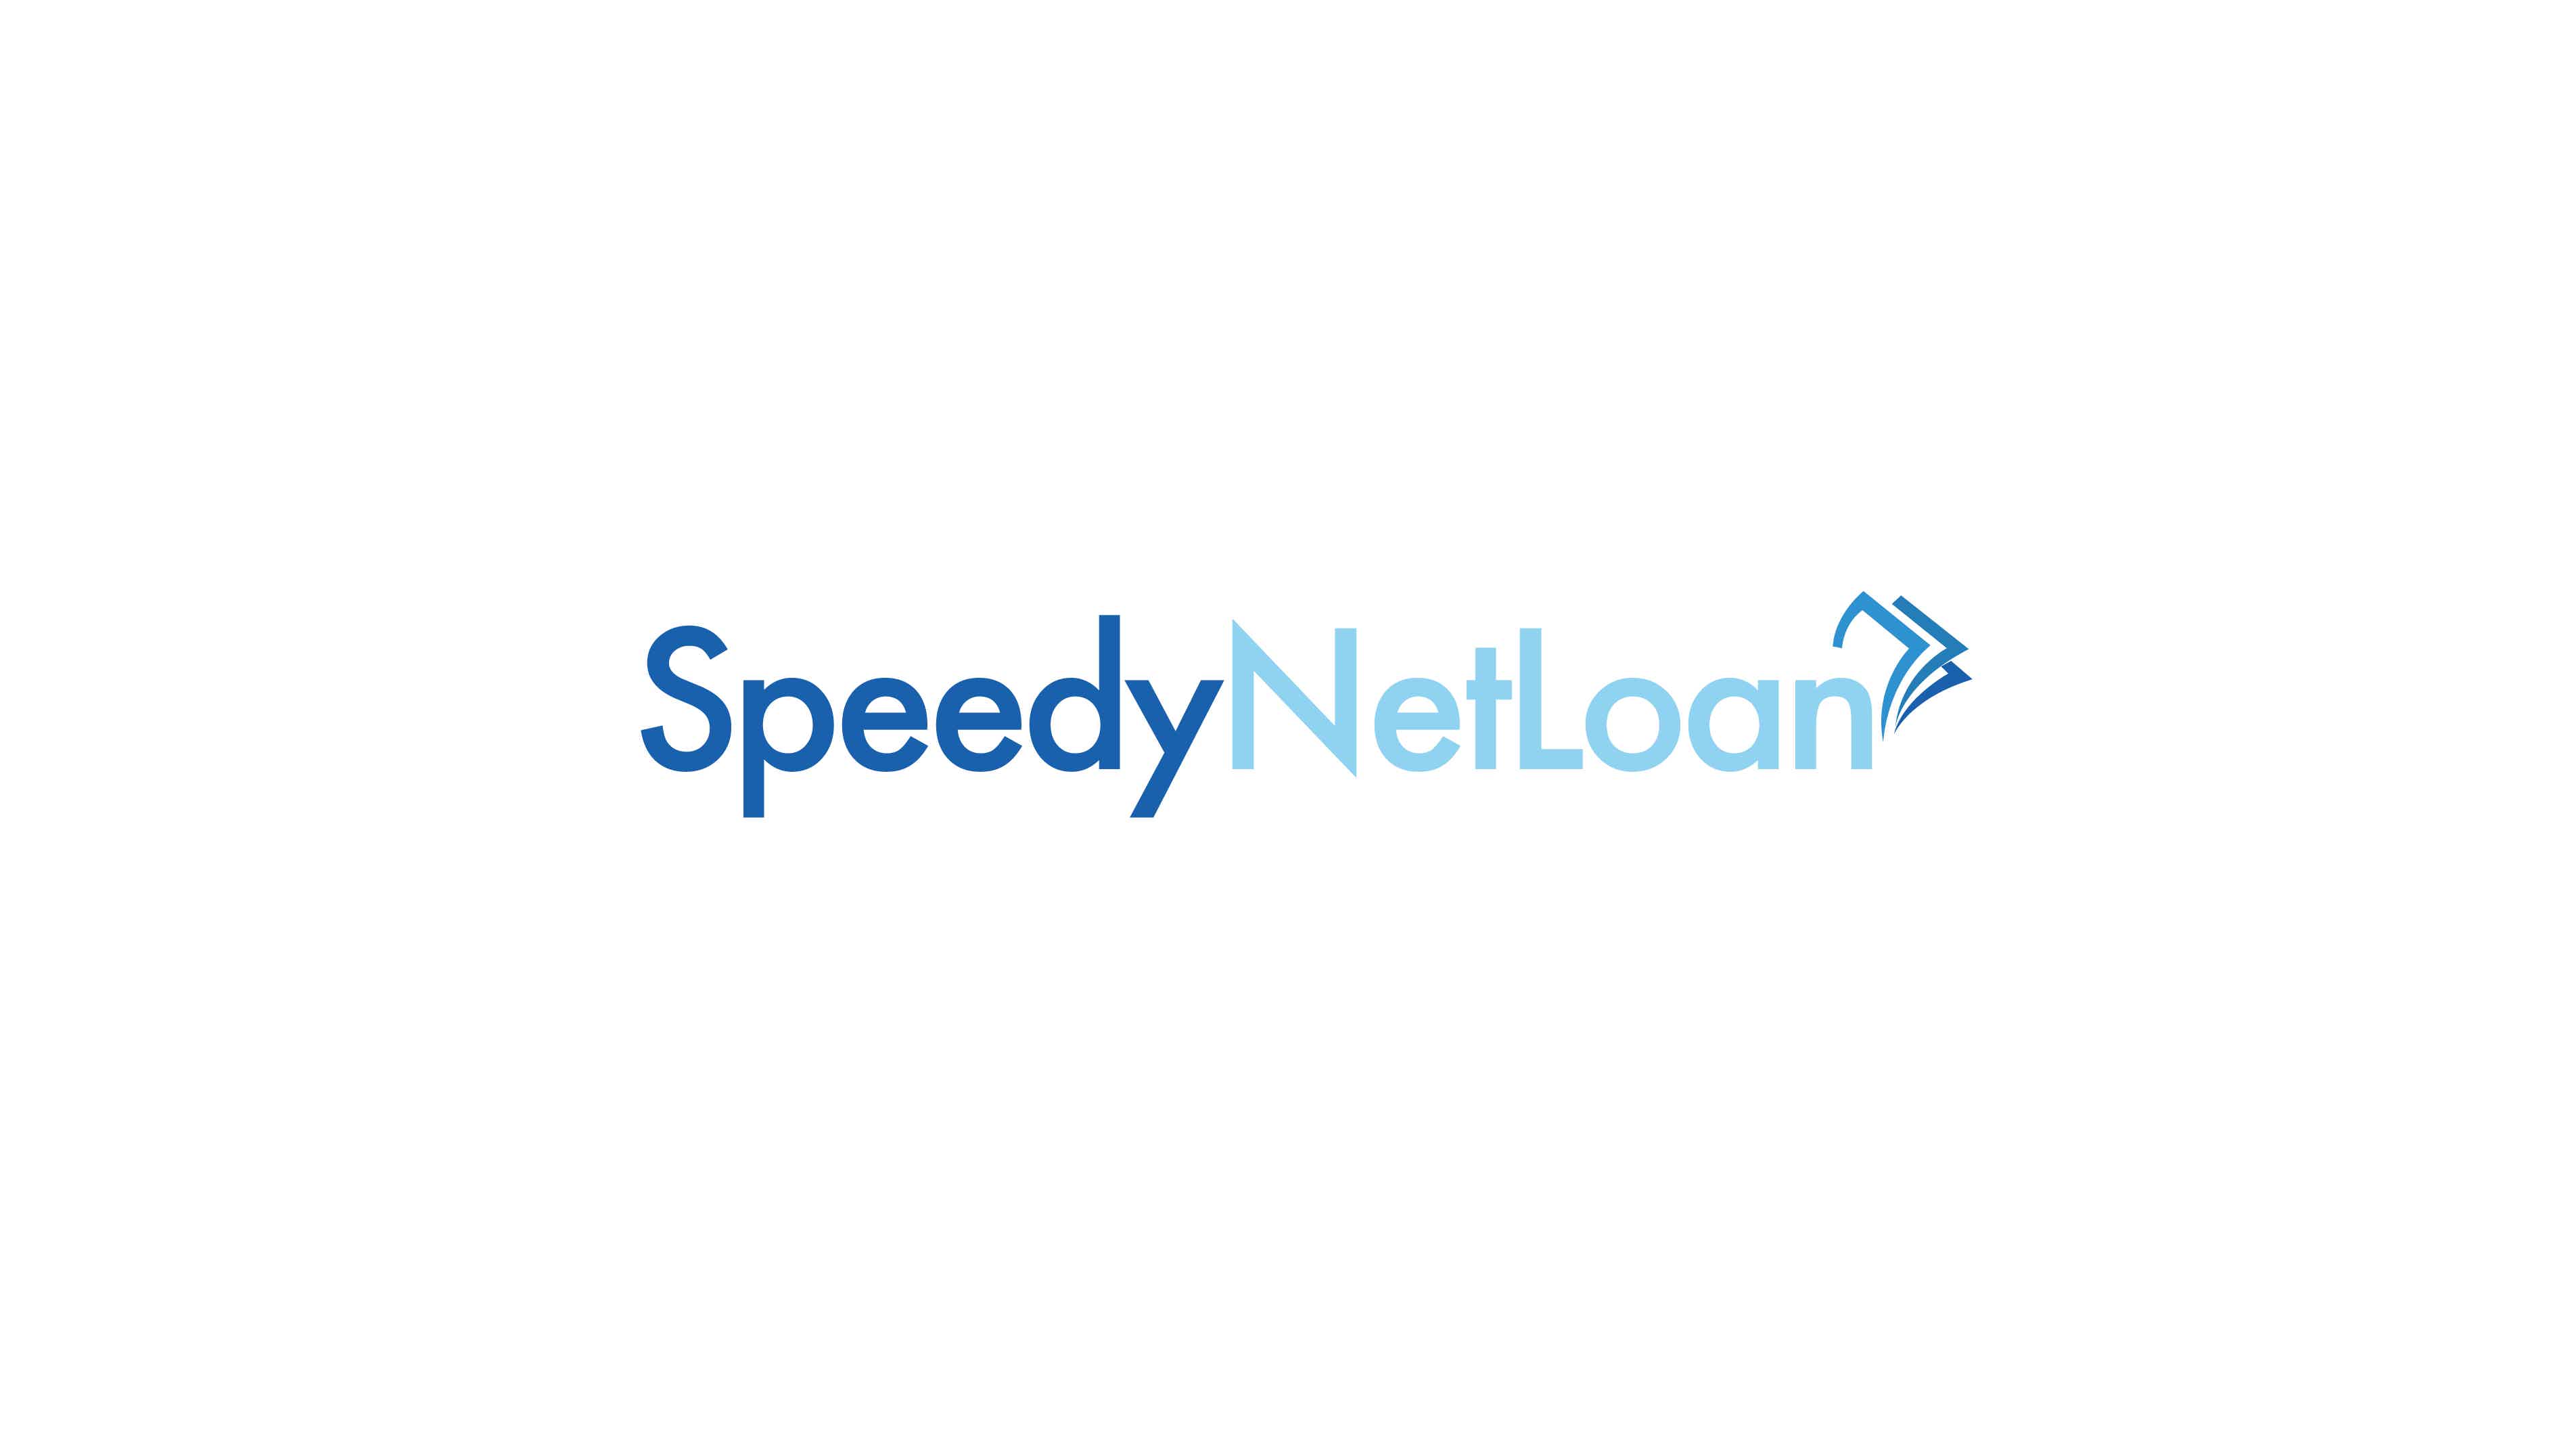 See how to apply online for a loan through SpeedyNetLoan. Source: SpeedyNetLoan.